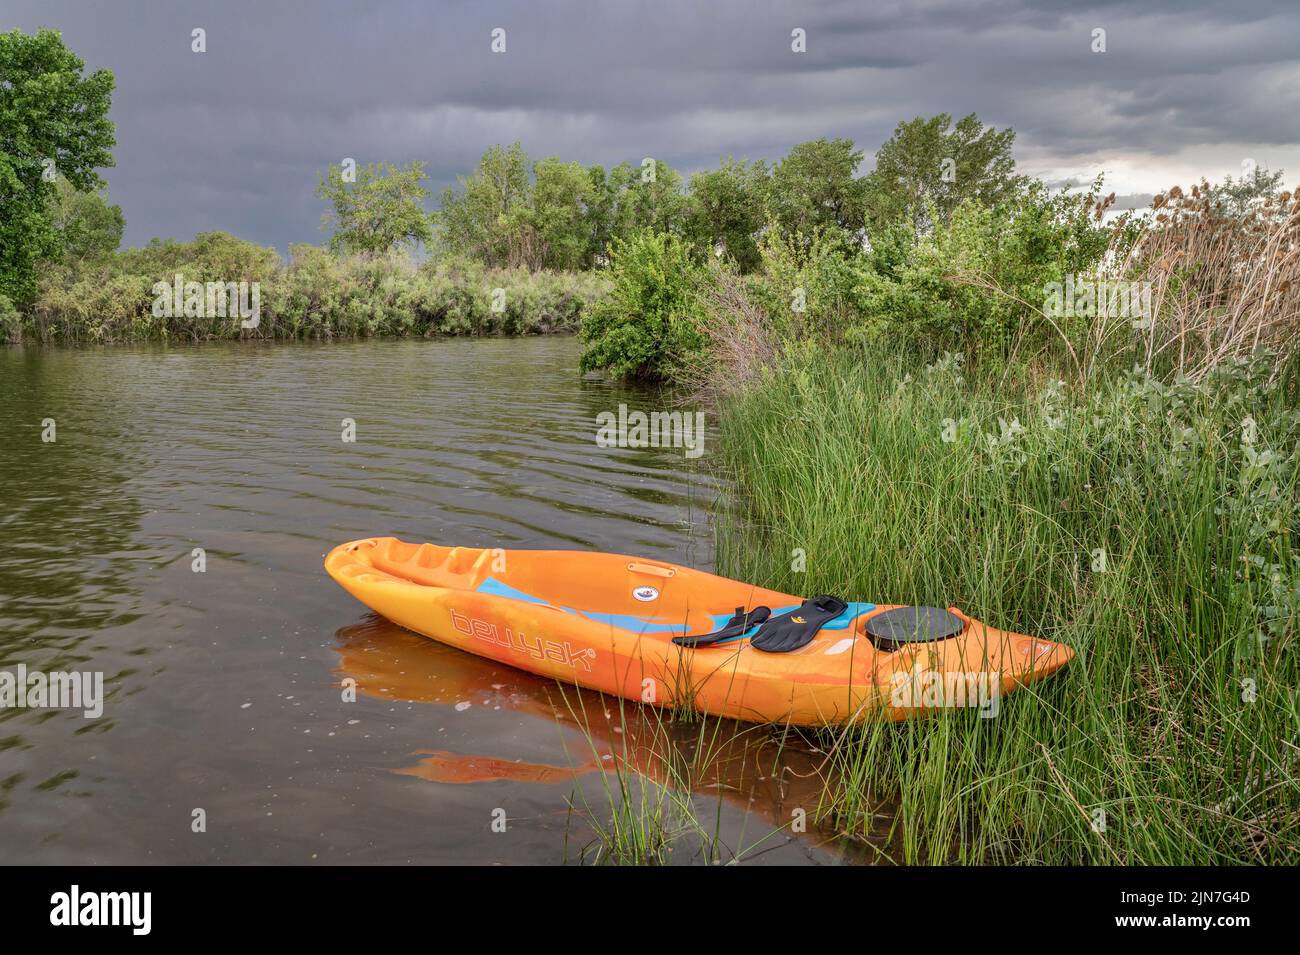 Fort Collins, CO, EE.UU. - 27 de junio de 2022: Bellyak, kayak propenso, en cañas a orillas del lago en Colorado, recreación acuática que combina los mejores aspectos de k Foto de stock